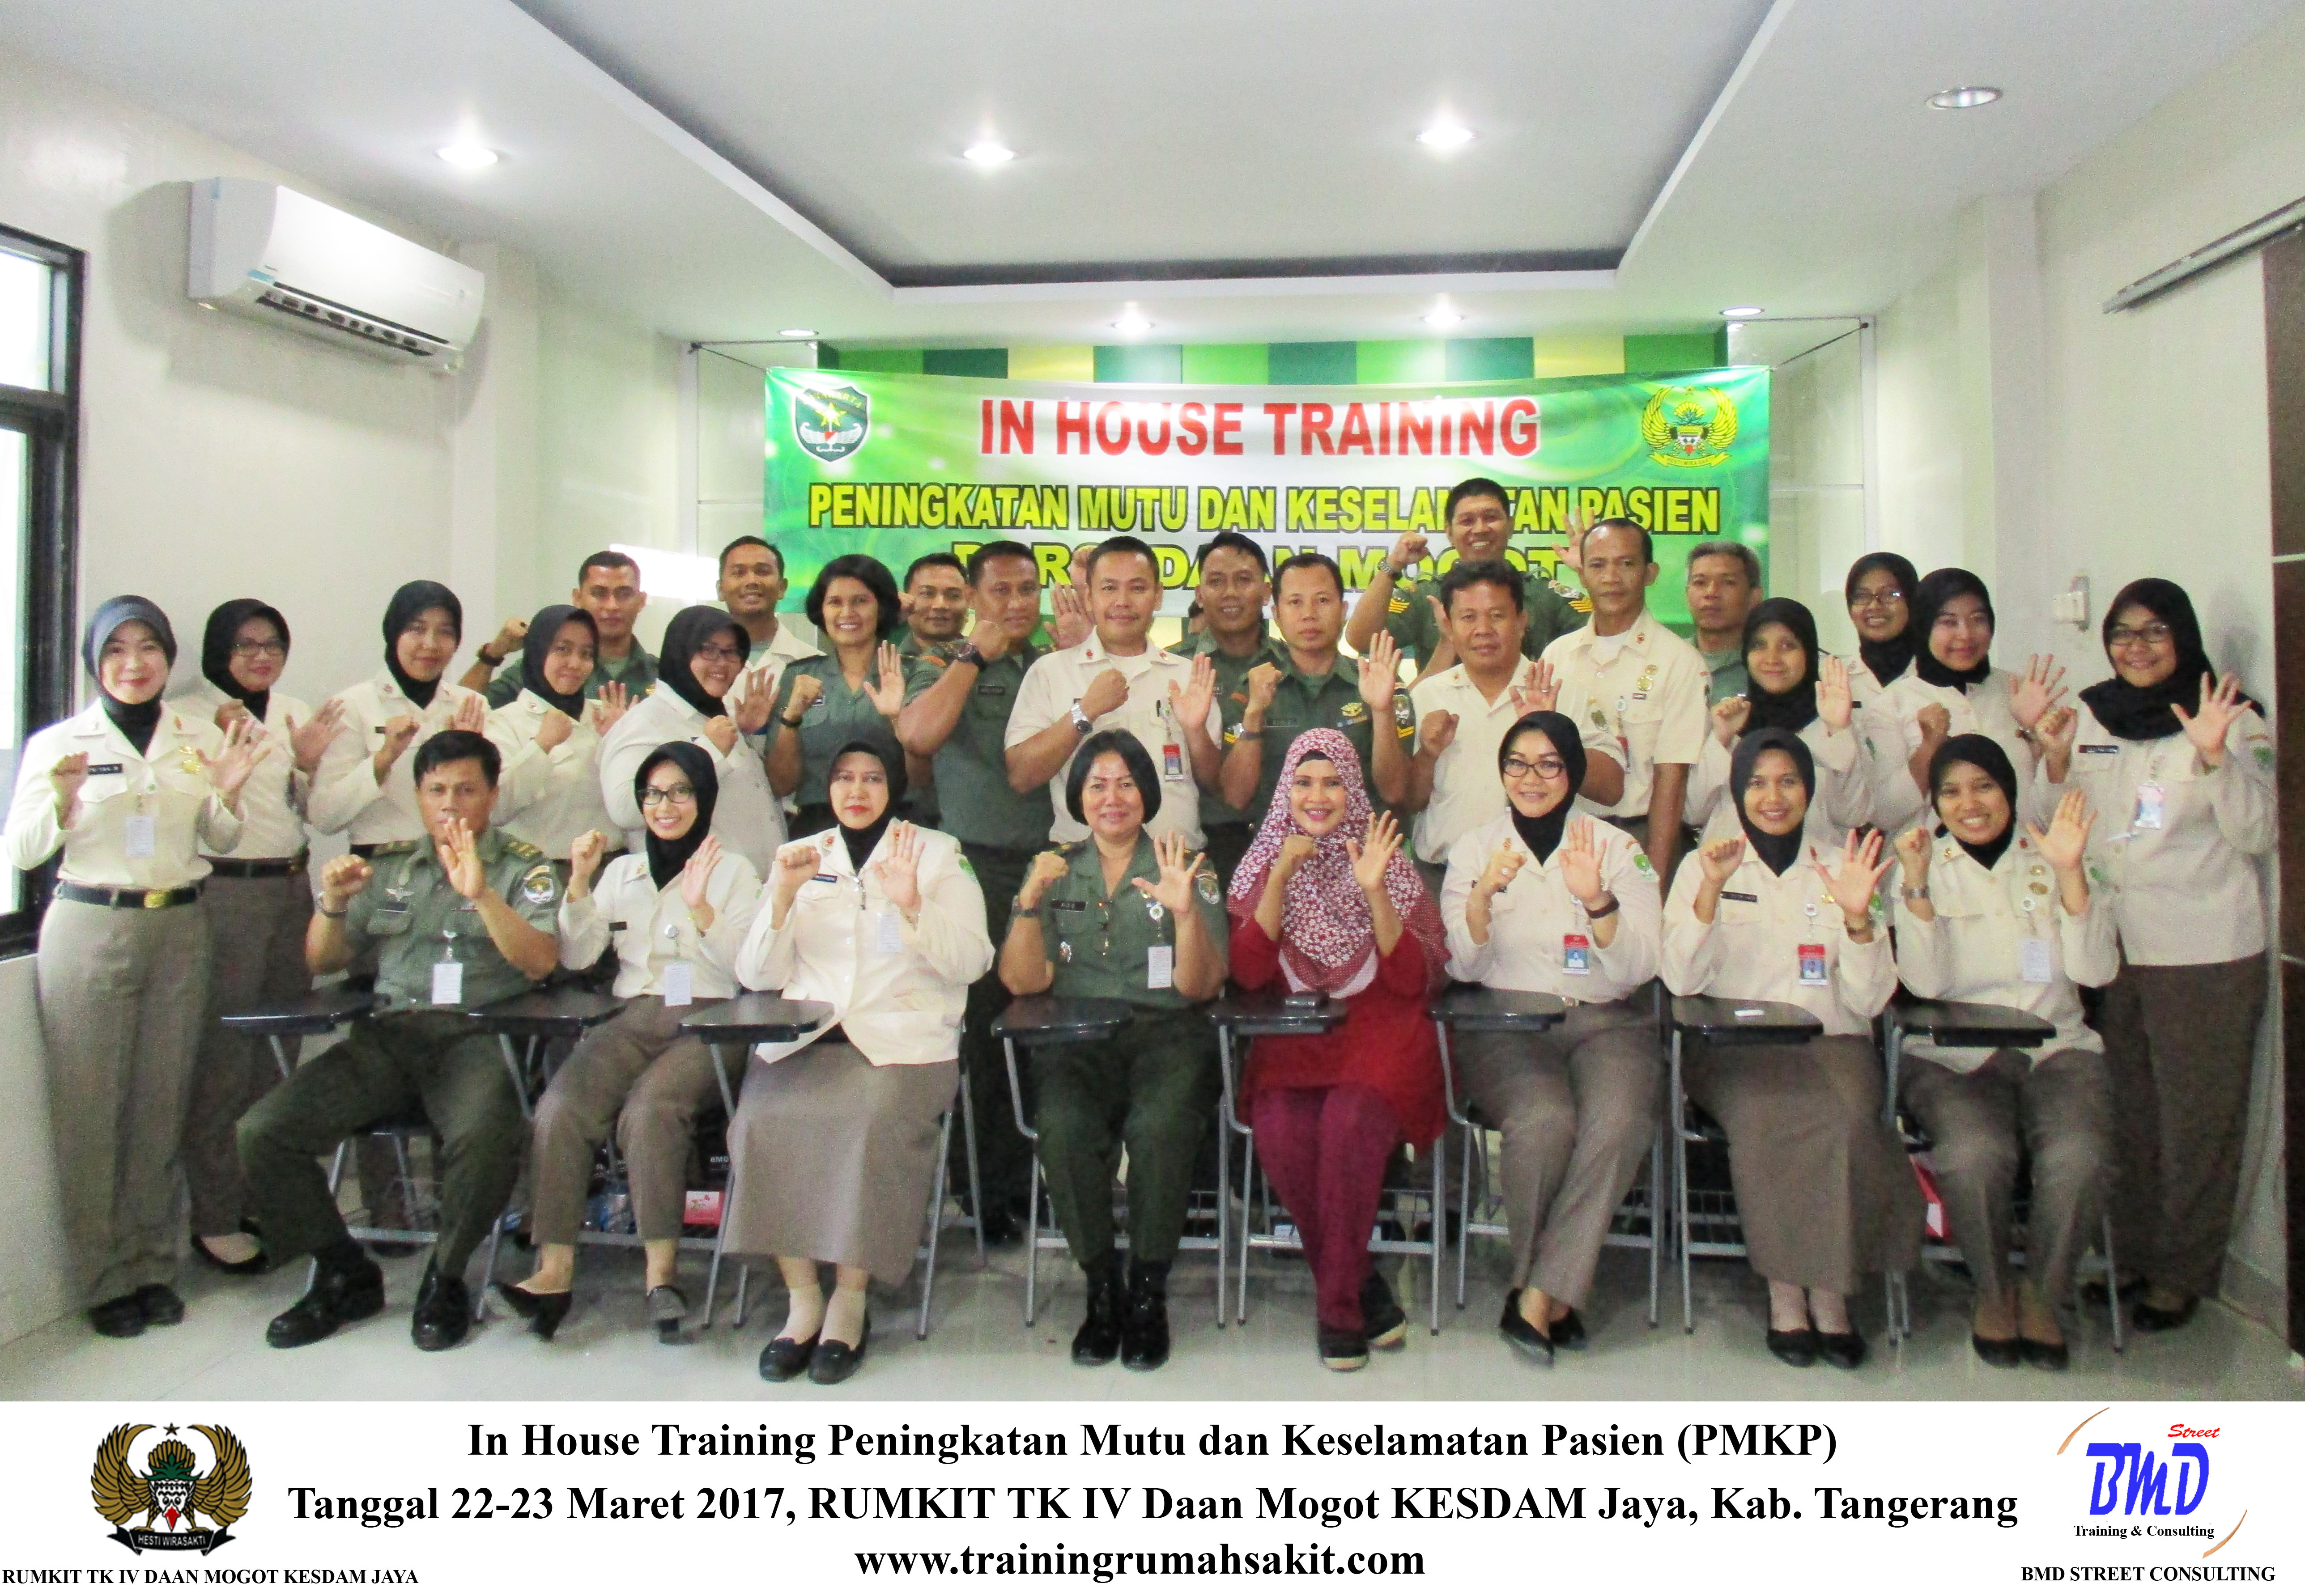 In House Training Peningkatan Mutu Dan Keselamatan Pasien (PMKP) RS Daan Mogot Tanggerang Selatan (22-23 Maret 2017)